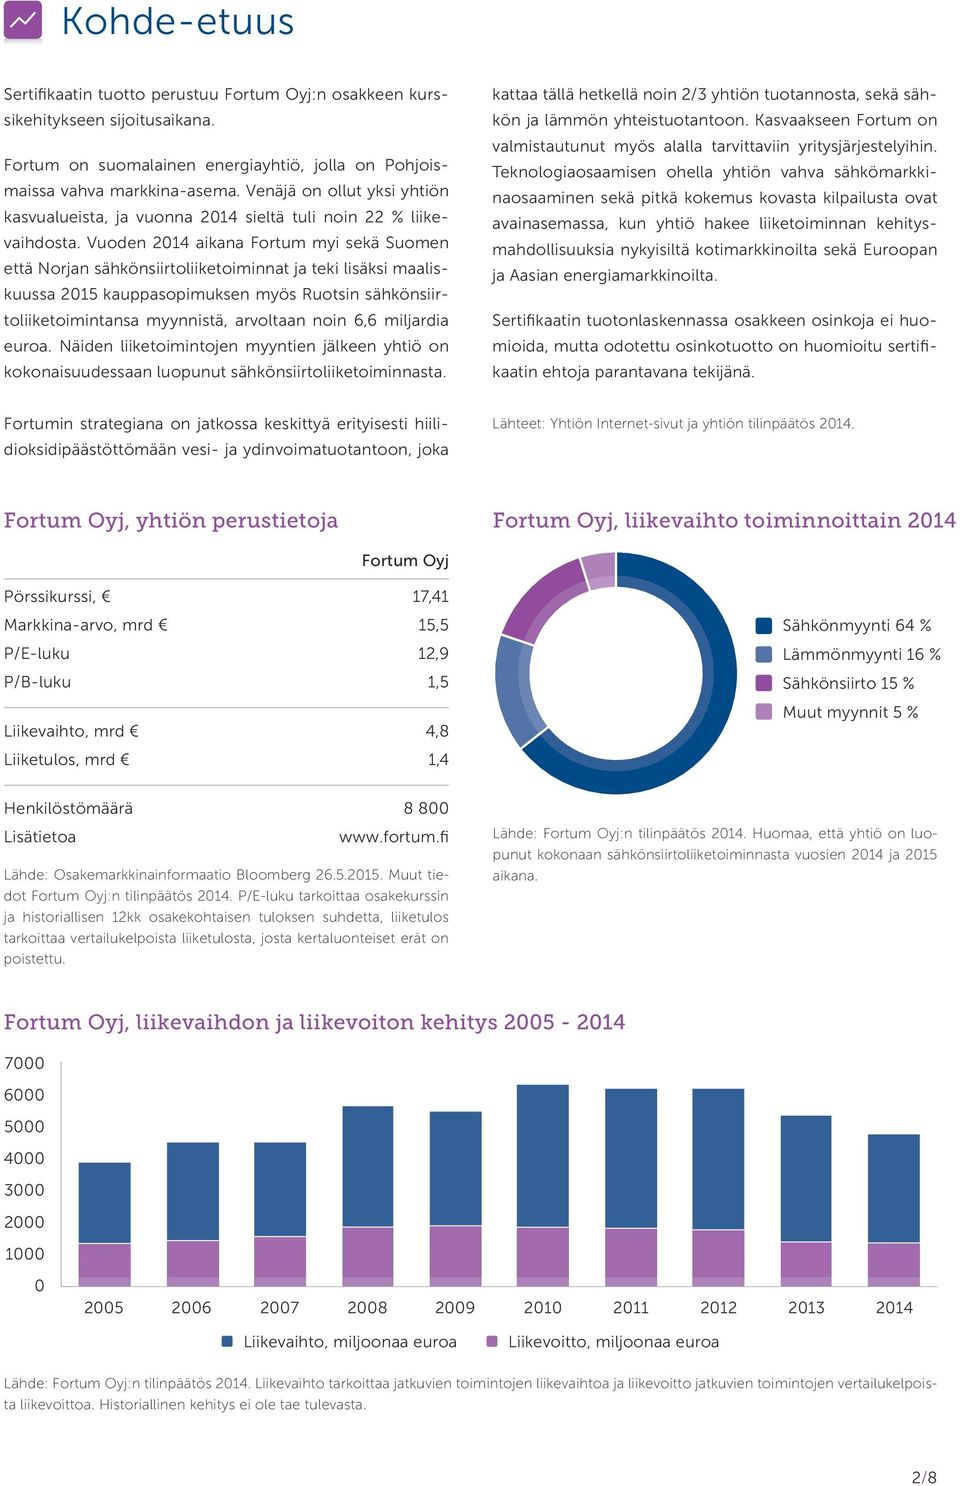 Vuoden 2014 aikana Fortum myi sekä Suomen että Norjan sähkönsiirtoliiketoiminnat ja teki lisäksi maaliskuussa 2015 kauppasopimuksen myös Ruotsin sähkönsiirtoliiketoimintansa myynnistä, arvoltaan noin